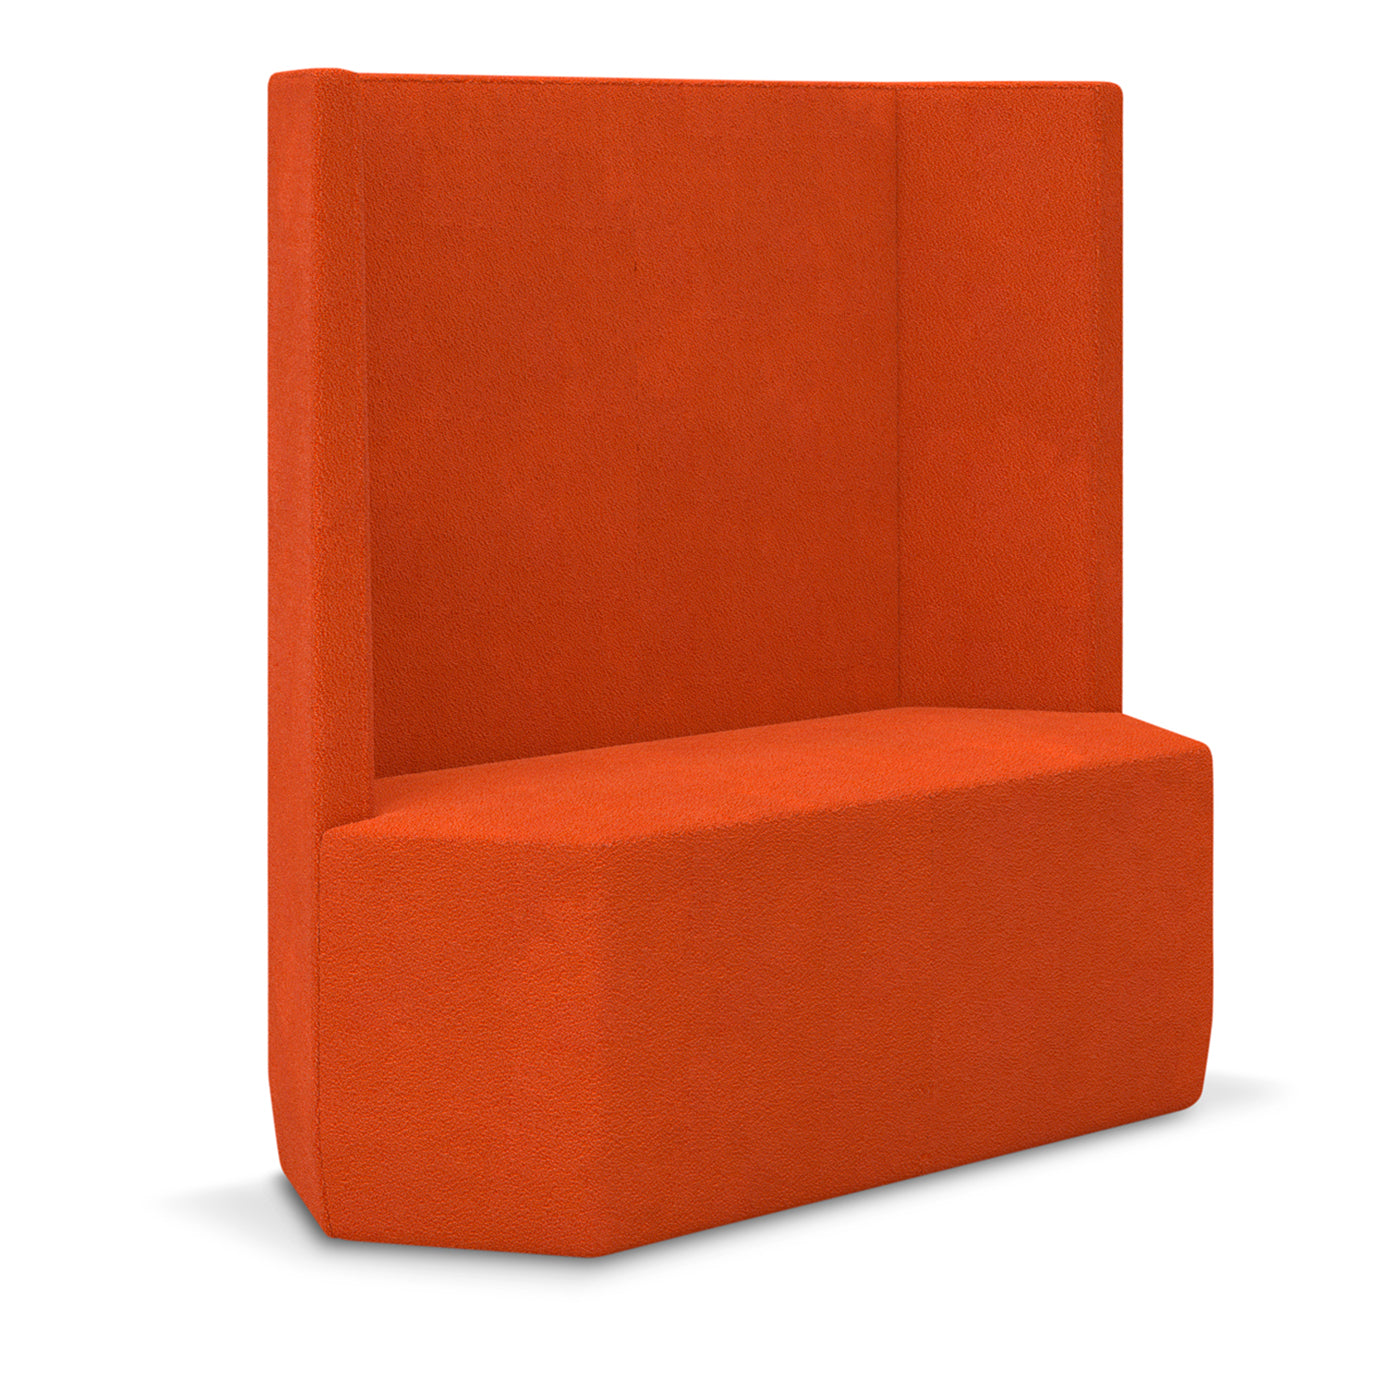 Tigram Tall Orange Sofa by Italo Pertichini  - Alternative view 1